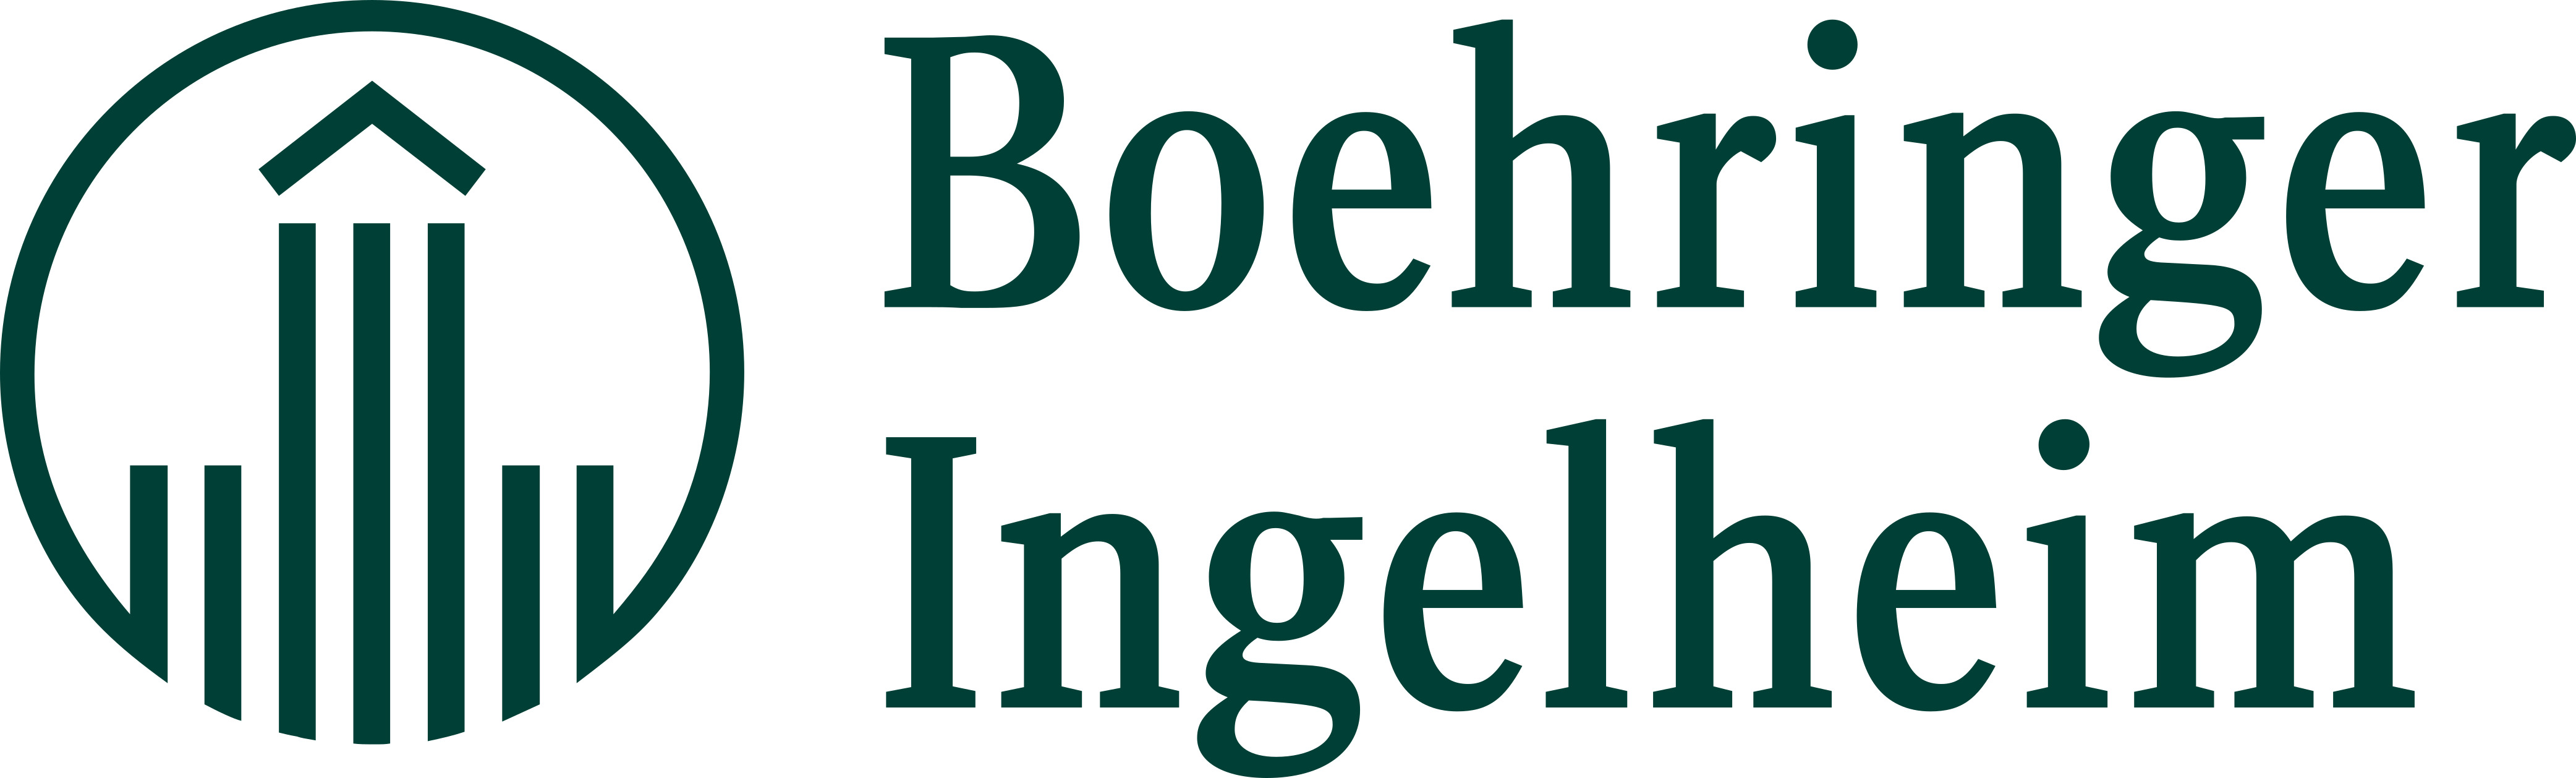 Boehringer_Logo_CMYK_Coated_Dark-Green.jpg